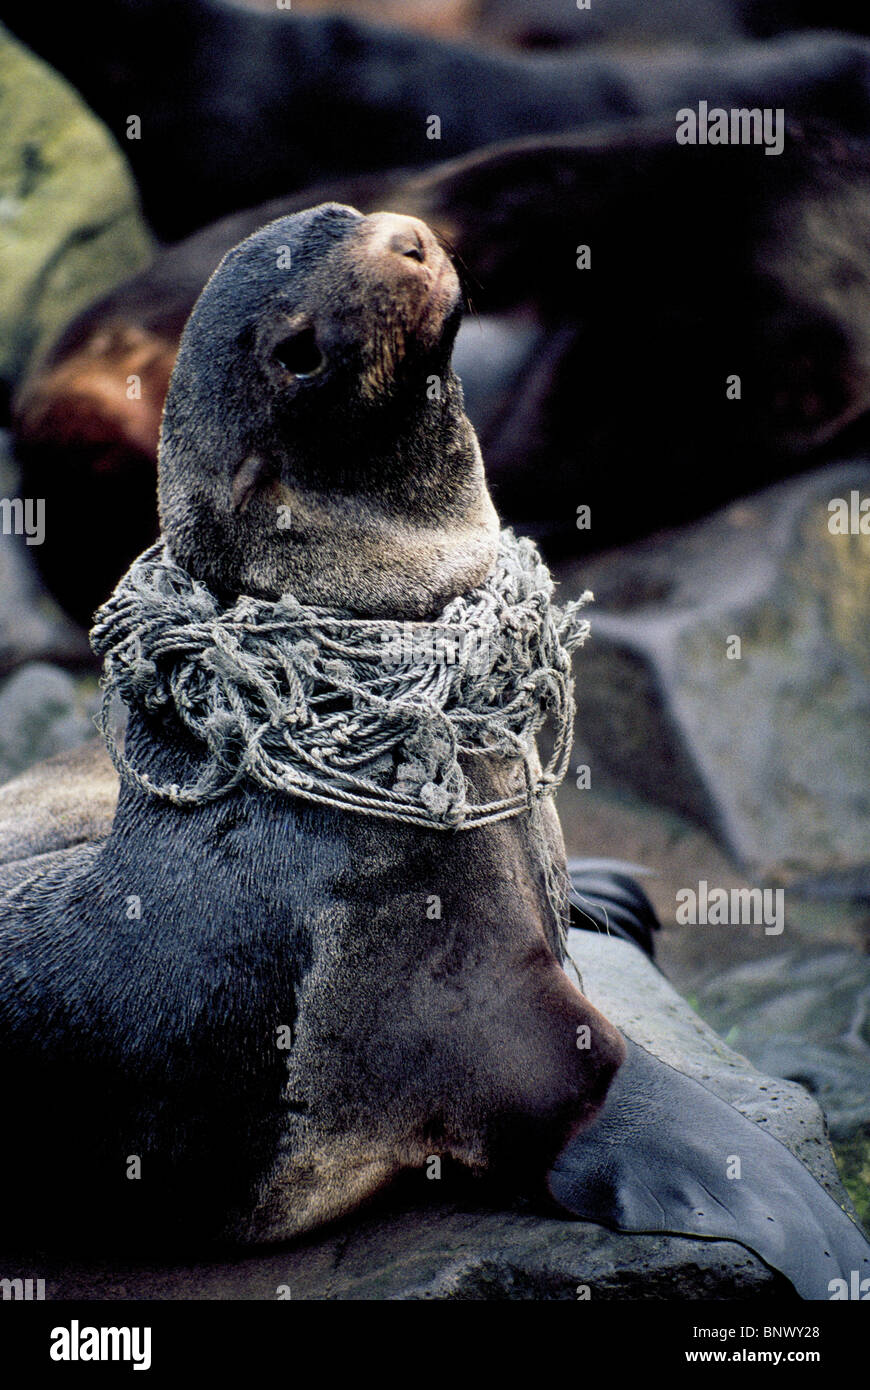 Un distressed Northern pelliccia sigillo impigliato in una rete da pesca nel mare di Bering poggia sull isola di San Paolo, una delle isole Pribilof dell Alaska, Stati Uniti d'America. Foto Stock